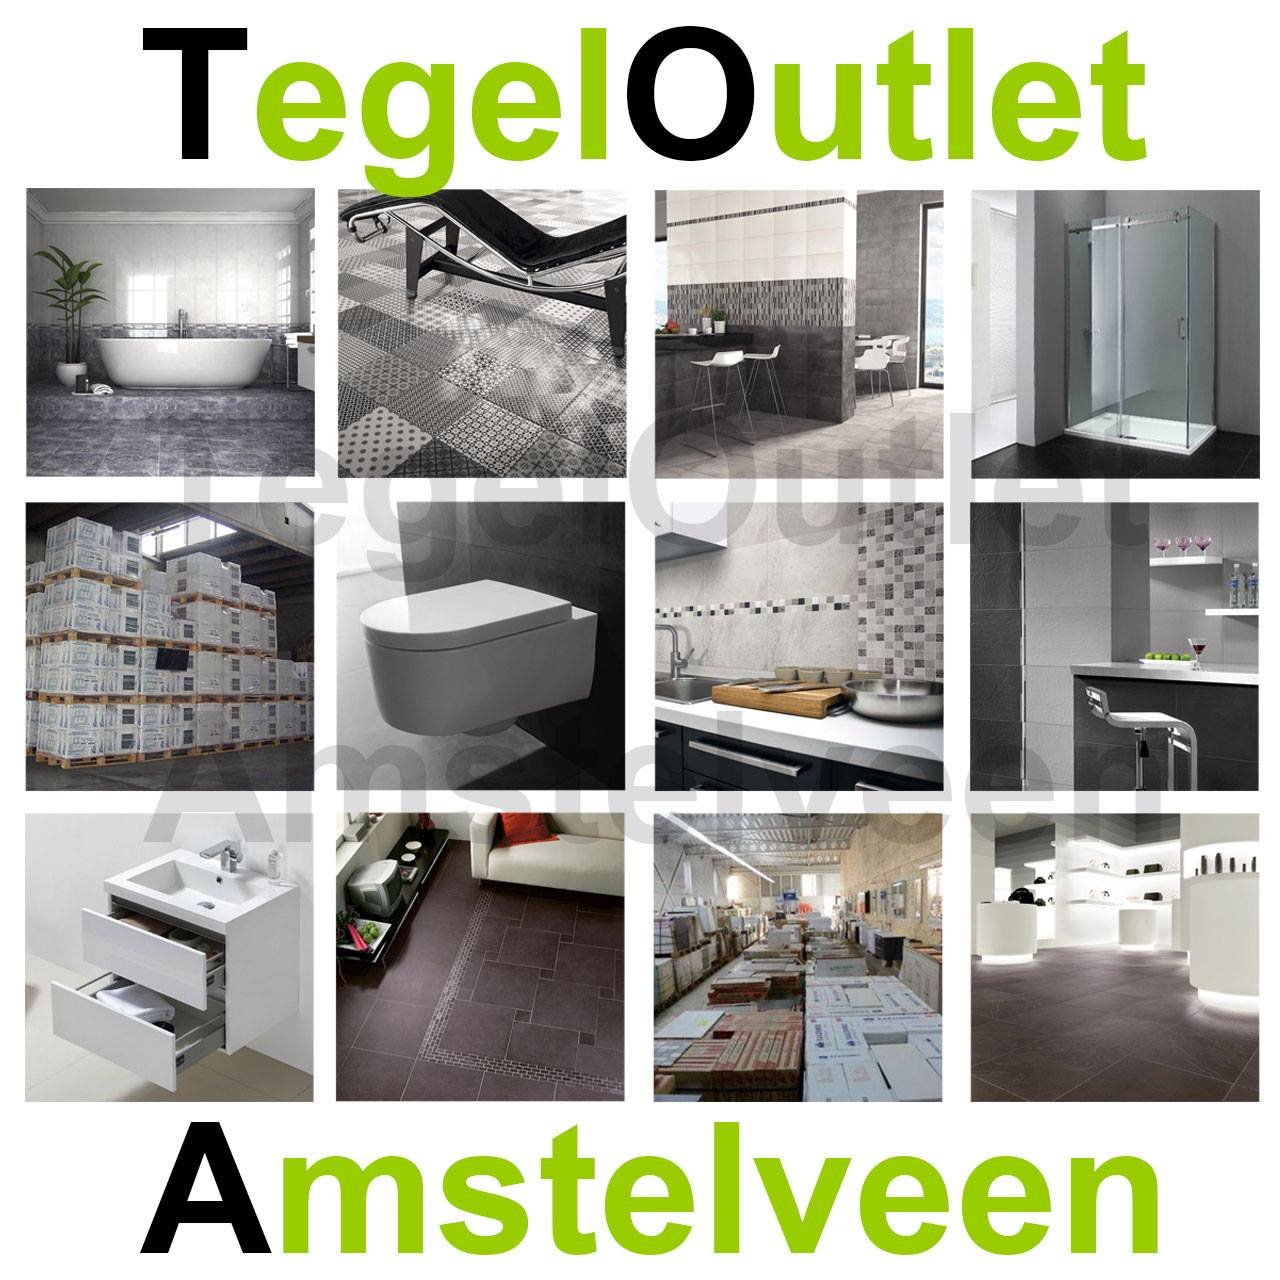 Tile Outlet Amstelveen